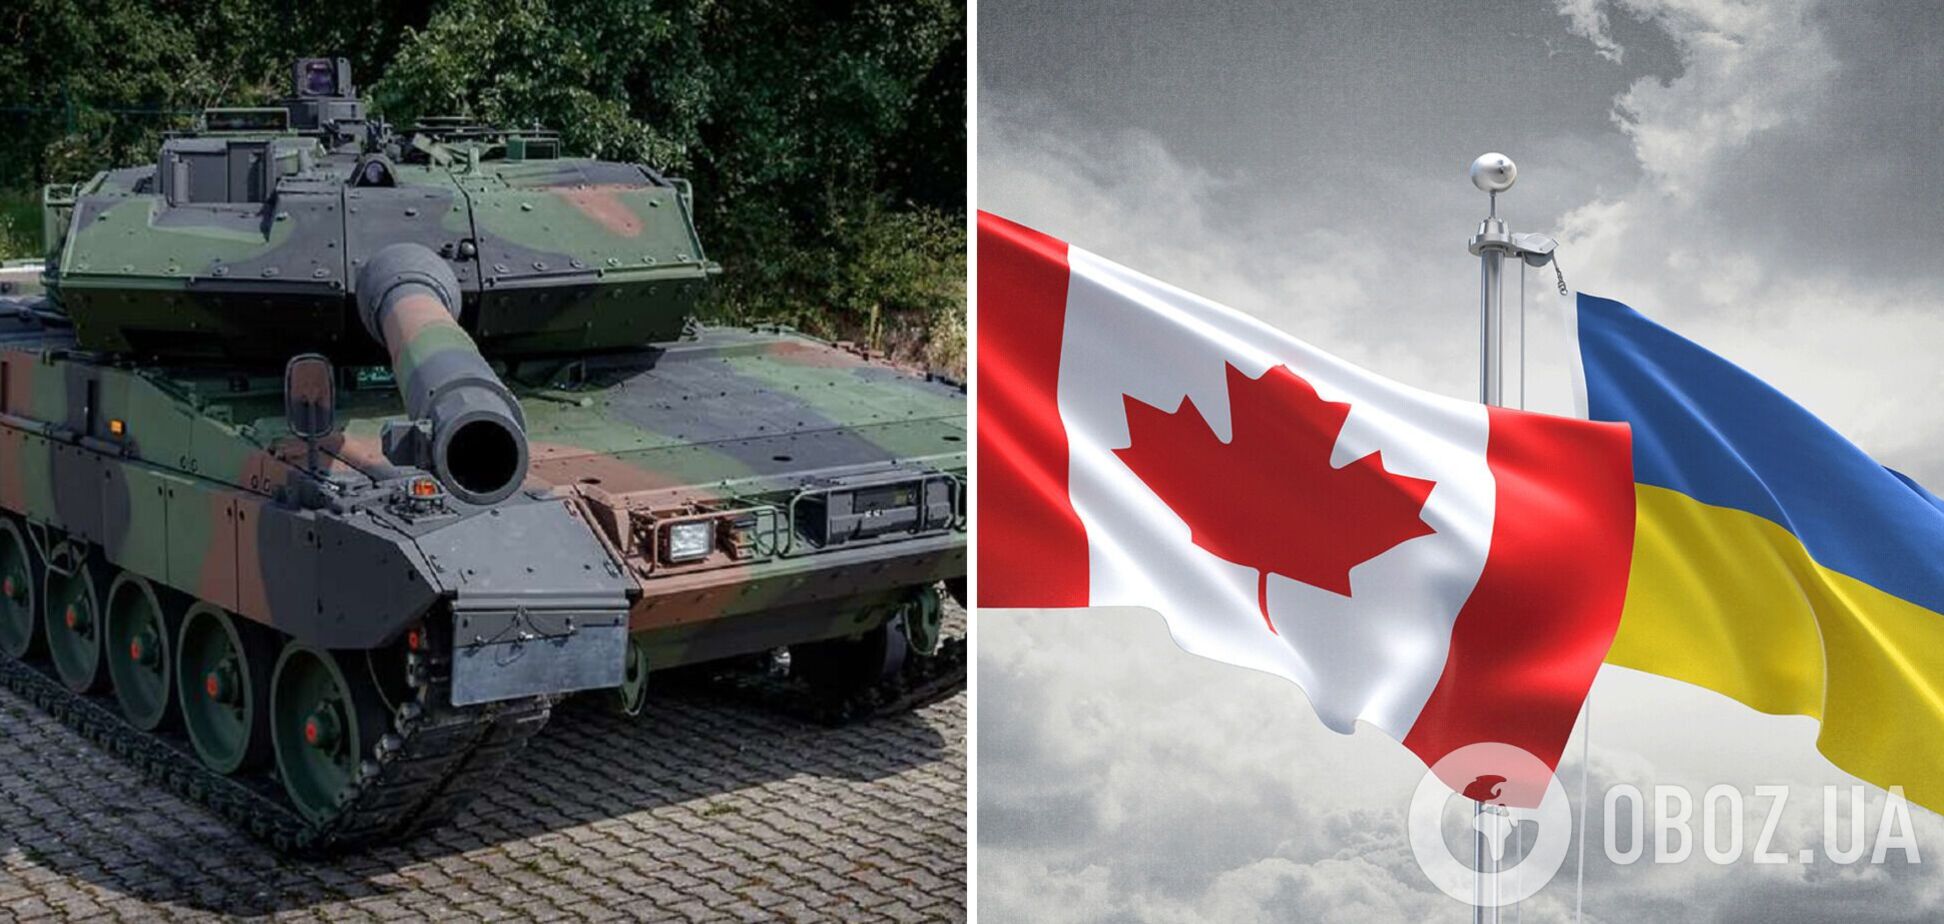 Канада передаст Украине еще четыре танка Leopard 2 к четырем обещанным ранее, – премьер Трюдо